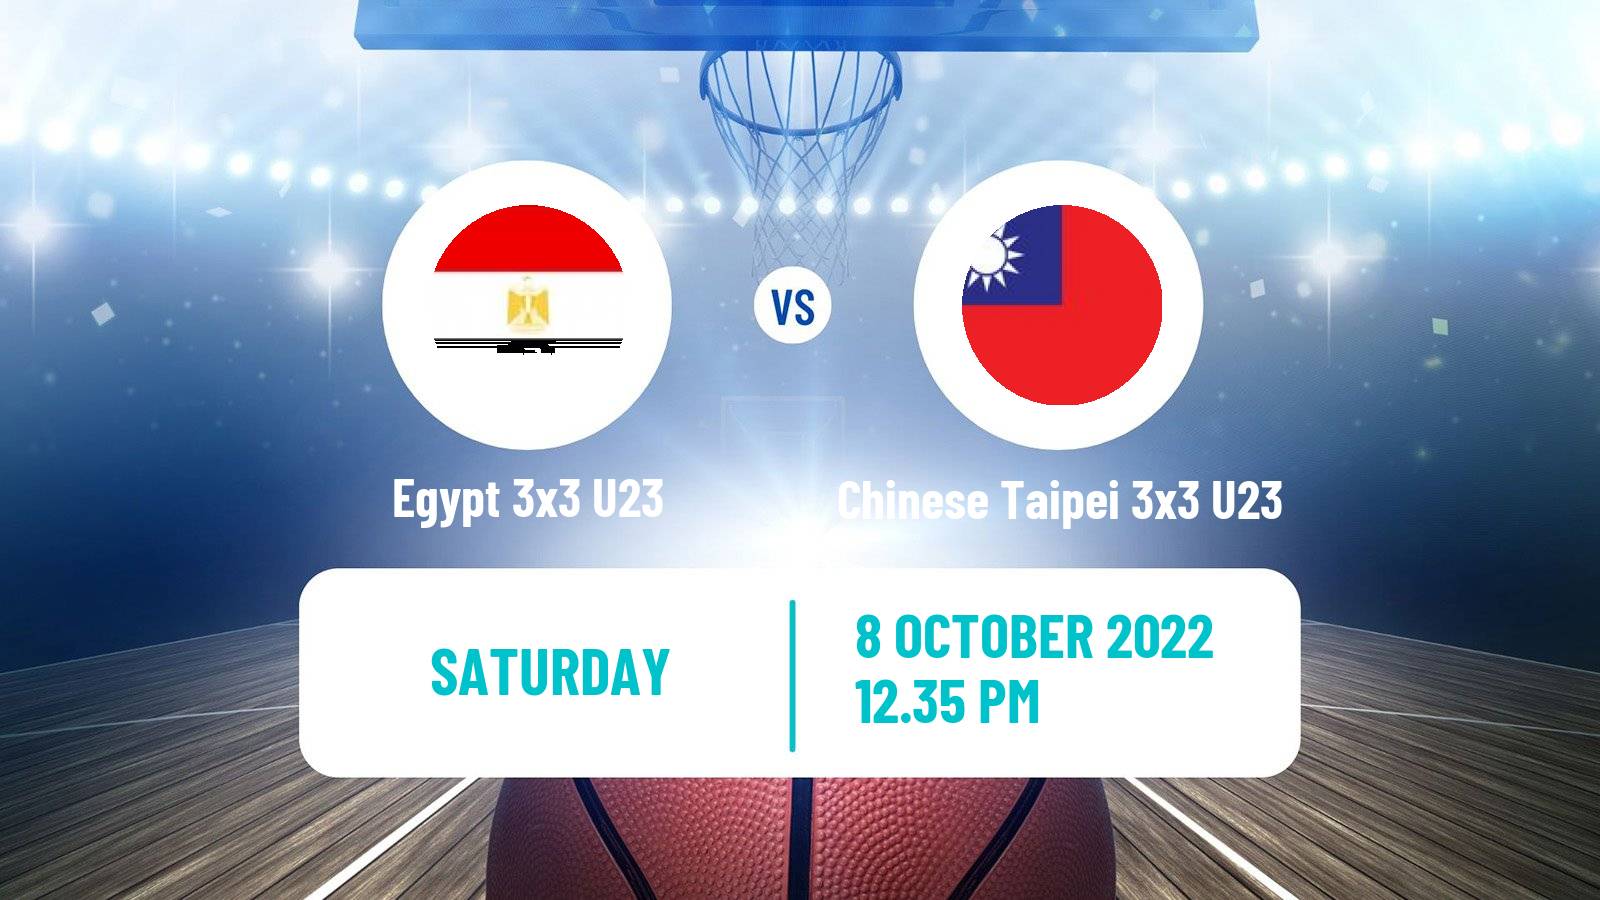 Basketball World Cup Basketball 3x3 U23 Egypt 3x3 U23 - Chinese Taipei 3x3 U23